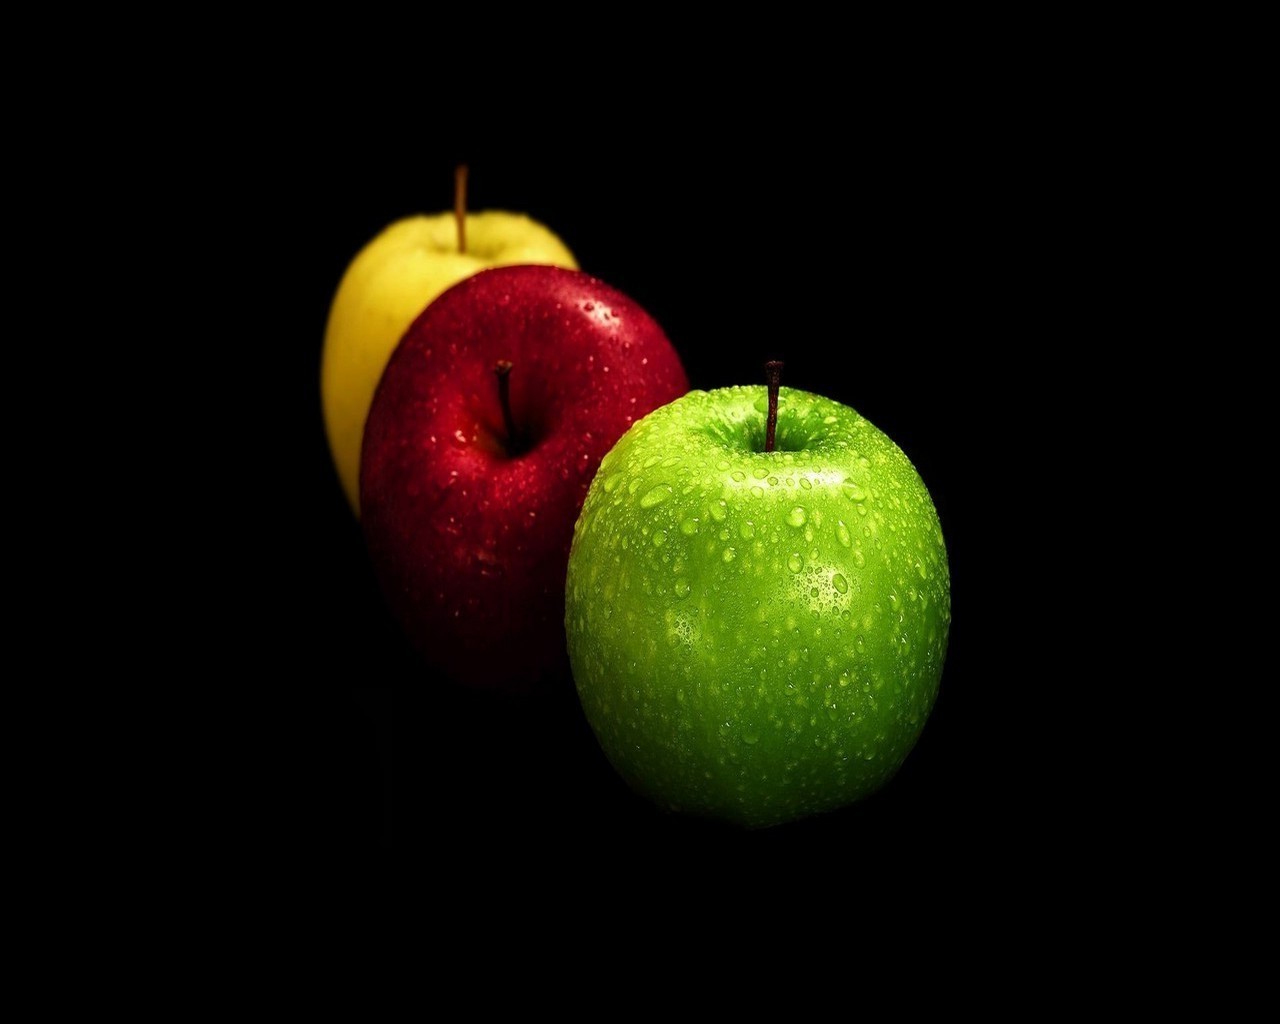 фрукты яблоко еда сочные кондитерское изделие здоровья сельское хозяйство вкусные здоровый сок мокрый питание падение свежесть цвет диета смит расти сладкий лузга